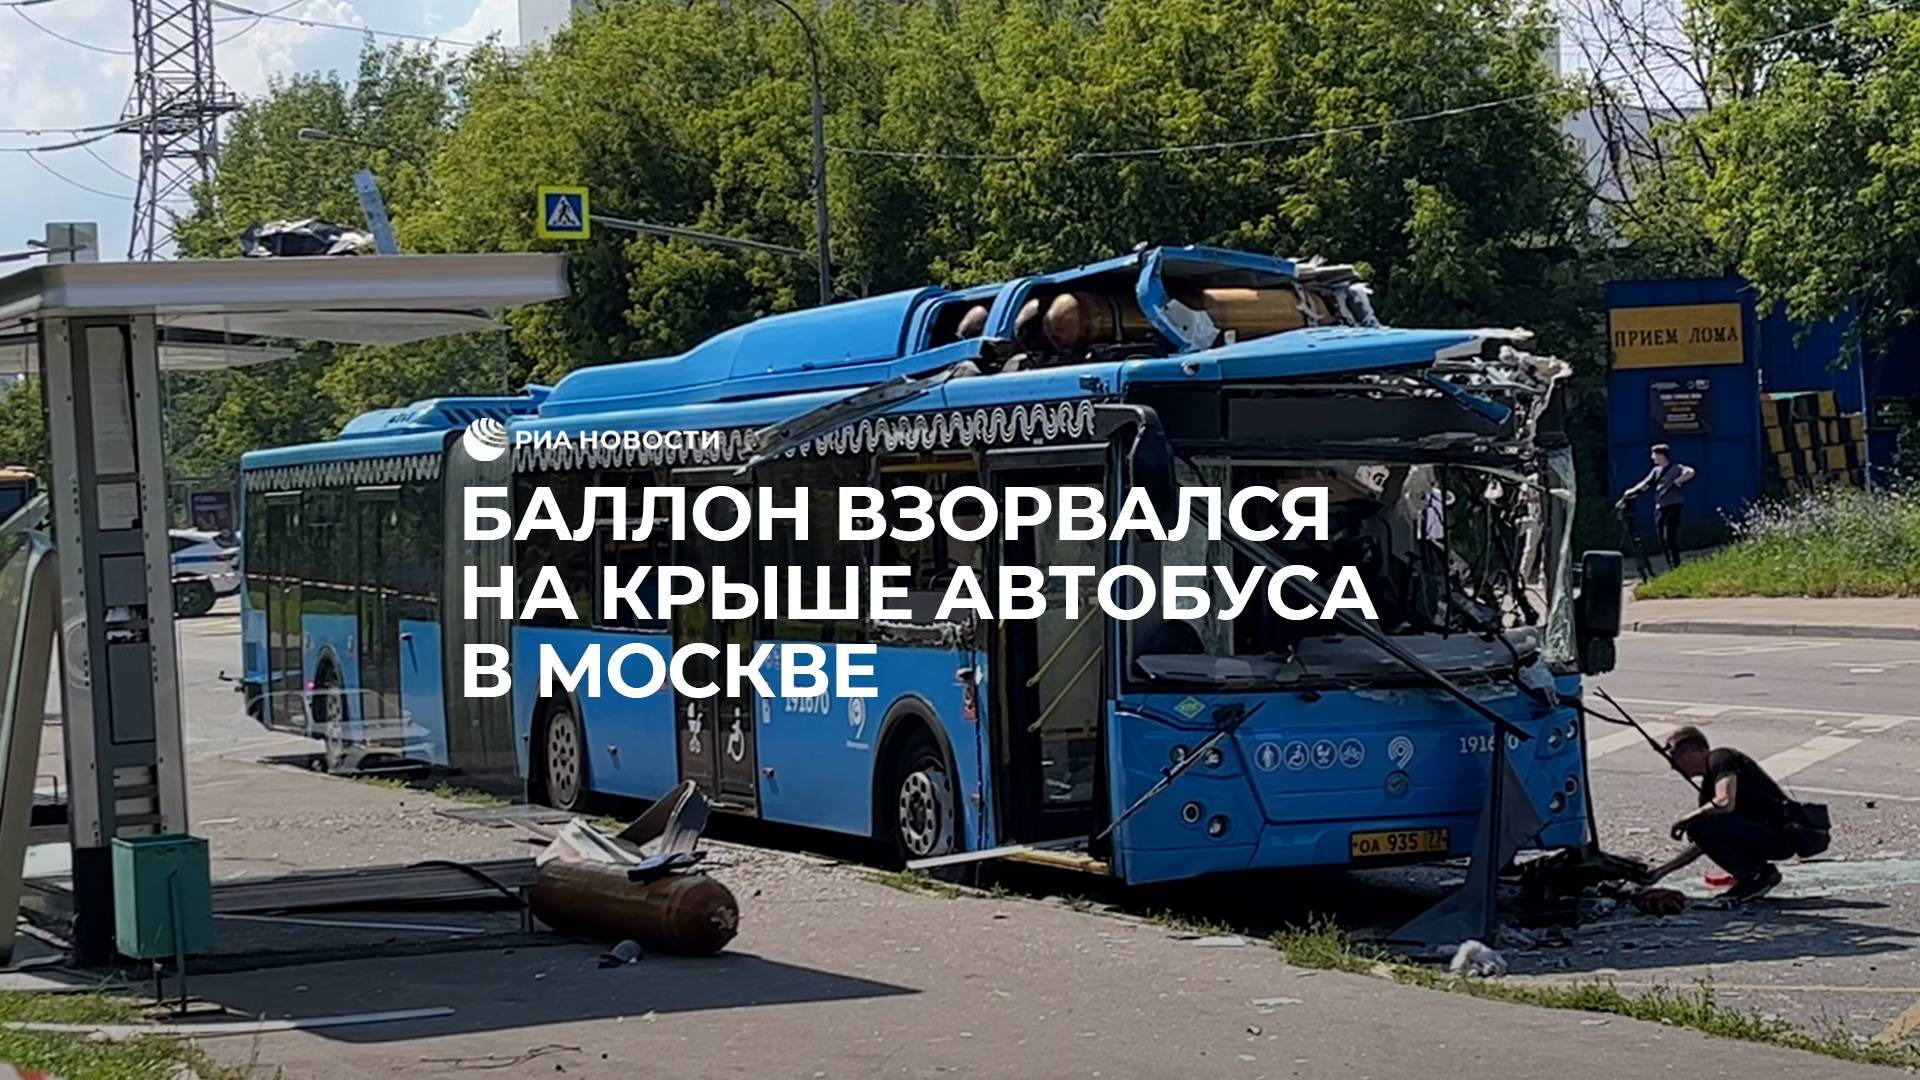 Баллон взорвался на крыше автобуса в Москве